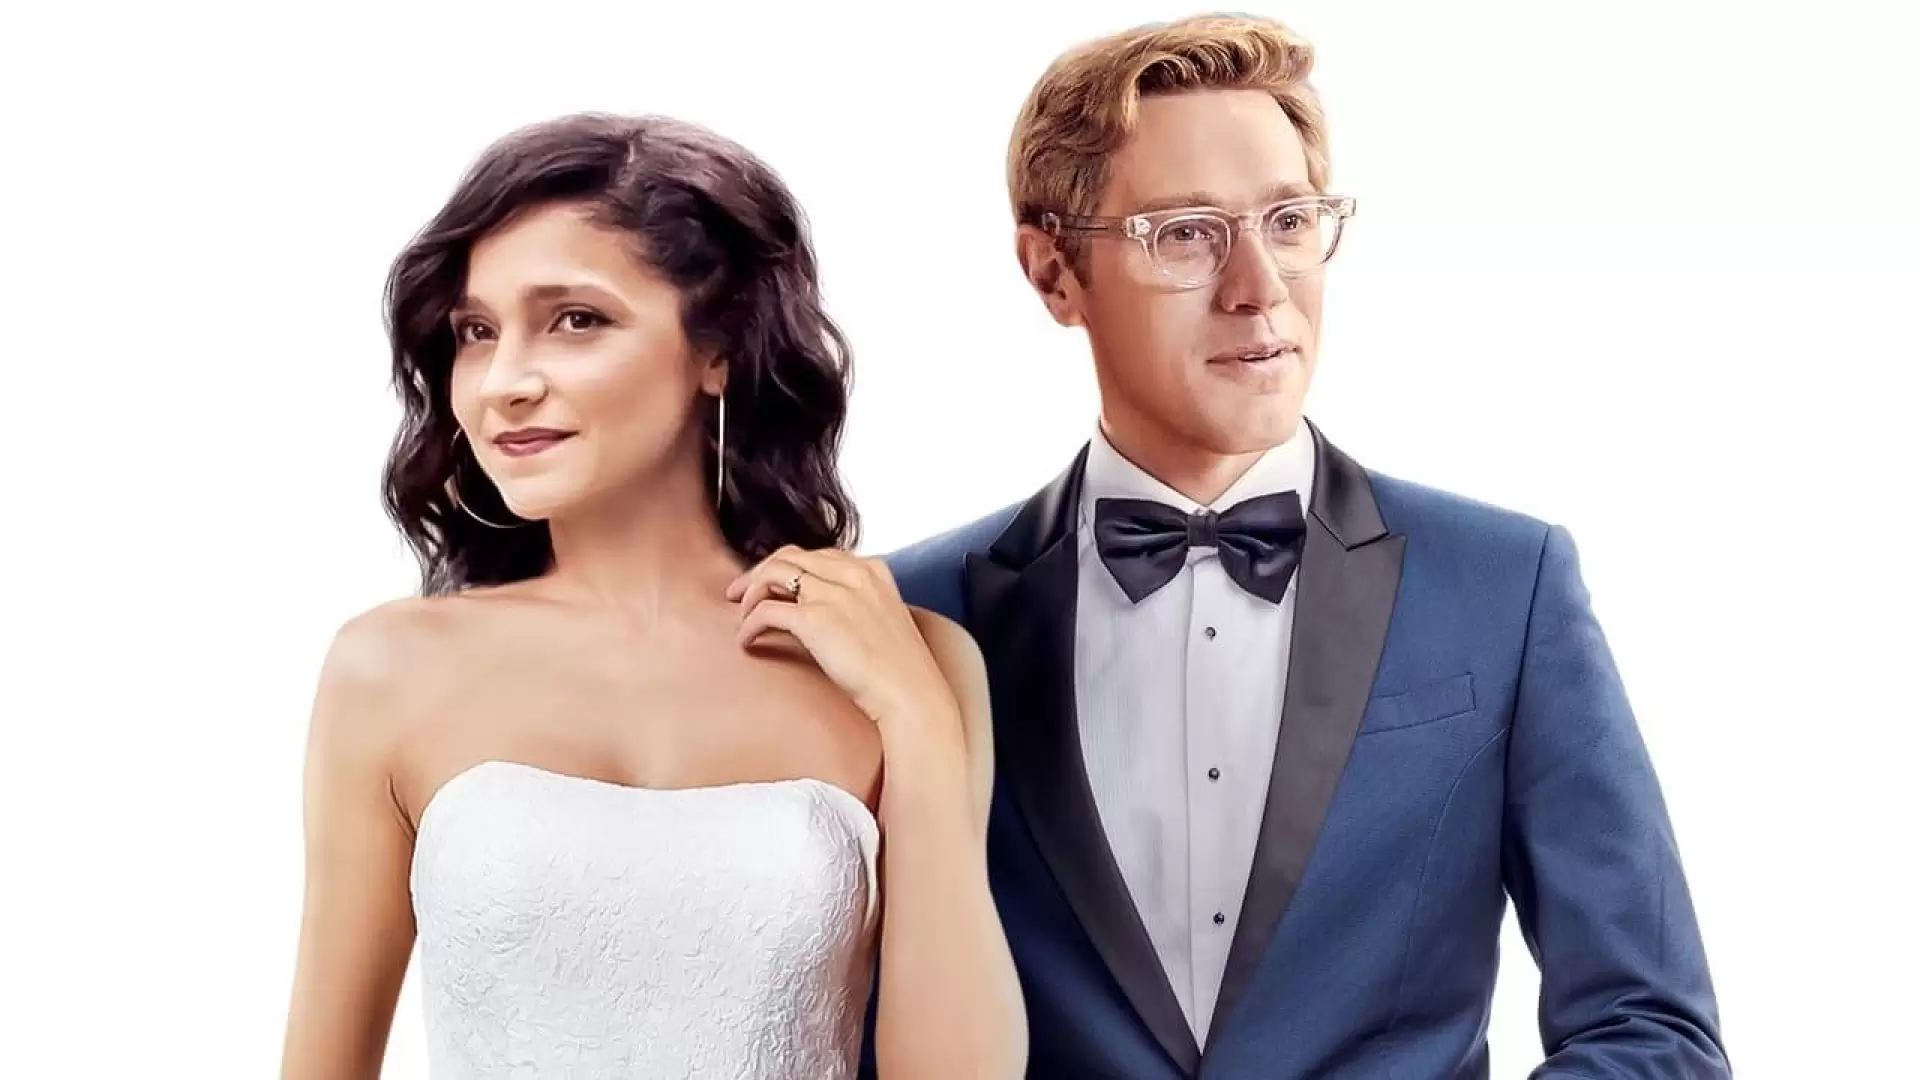 دانلود فیلم A Simple Wedding 2019 با زیرنویس فارسی و تماشای آنلاین